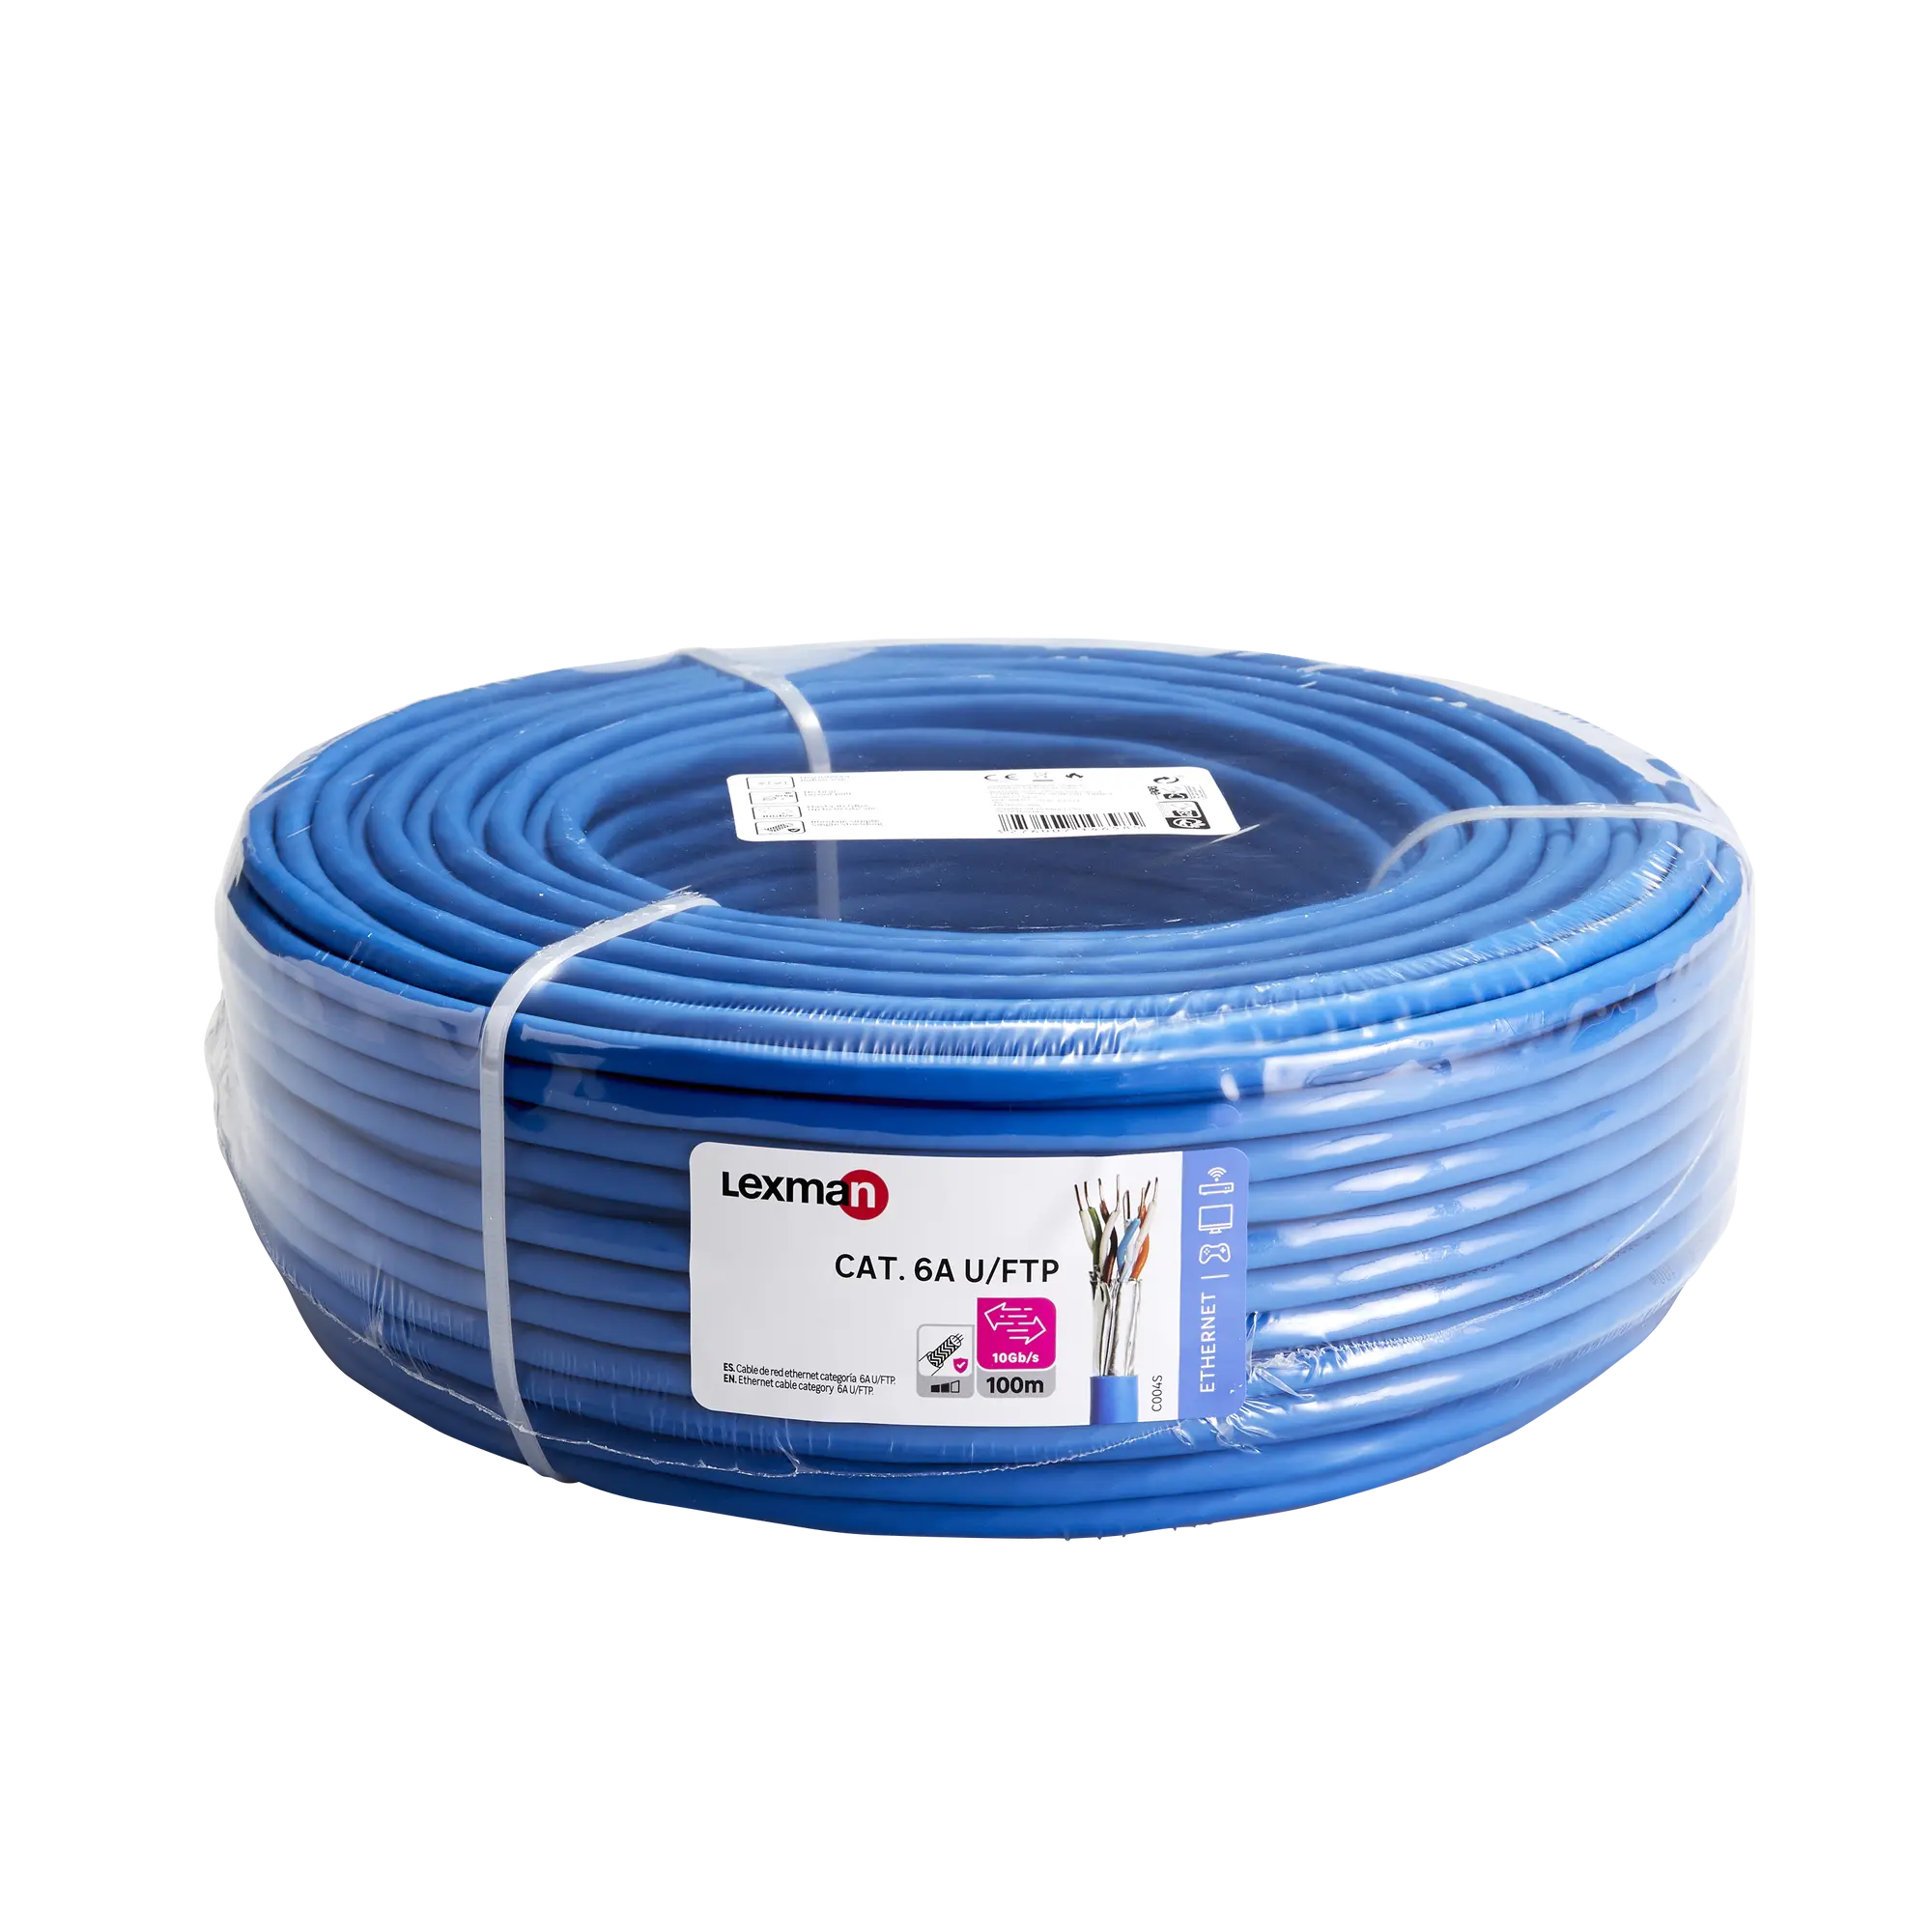 Cable de red lexman ftp 4 pares cat6 color azul fcd